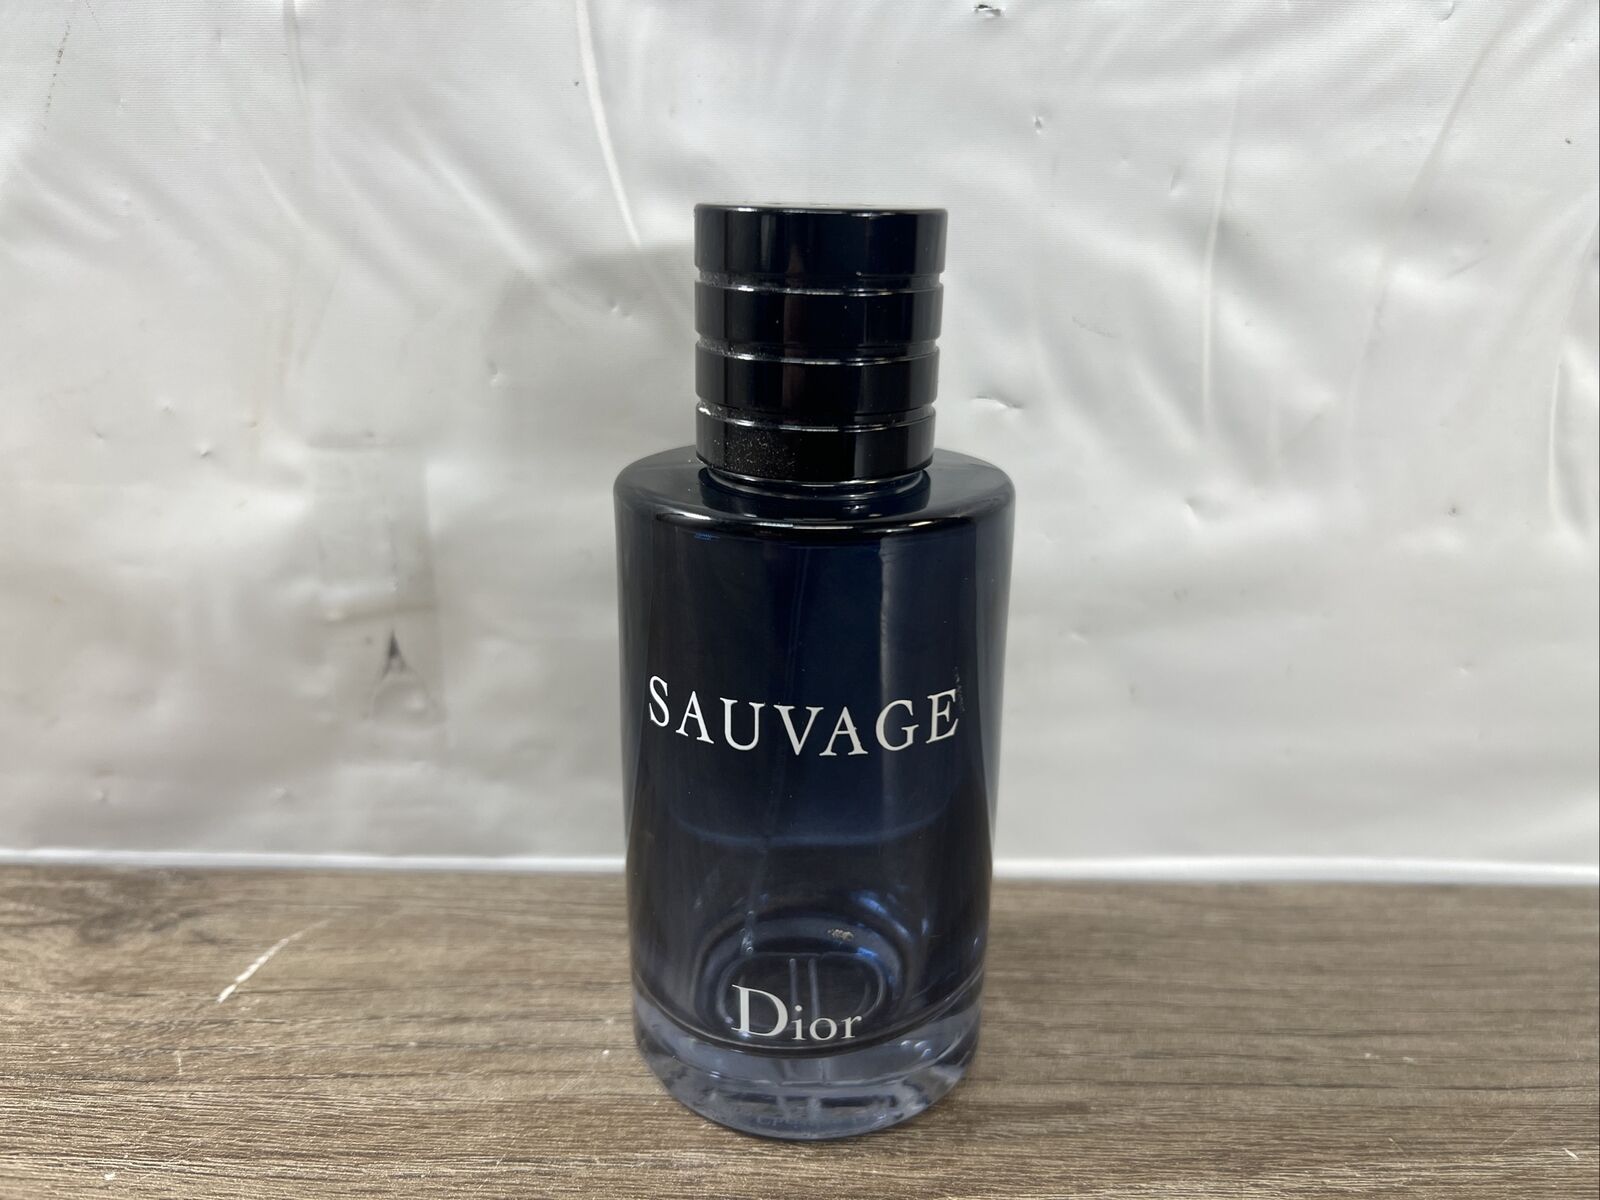 Sauvage Christian Dior, Eau De Toilette Empty Bottle 100 ml 3.4 Fl Oz France